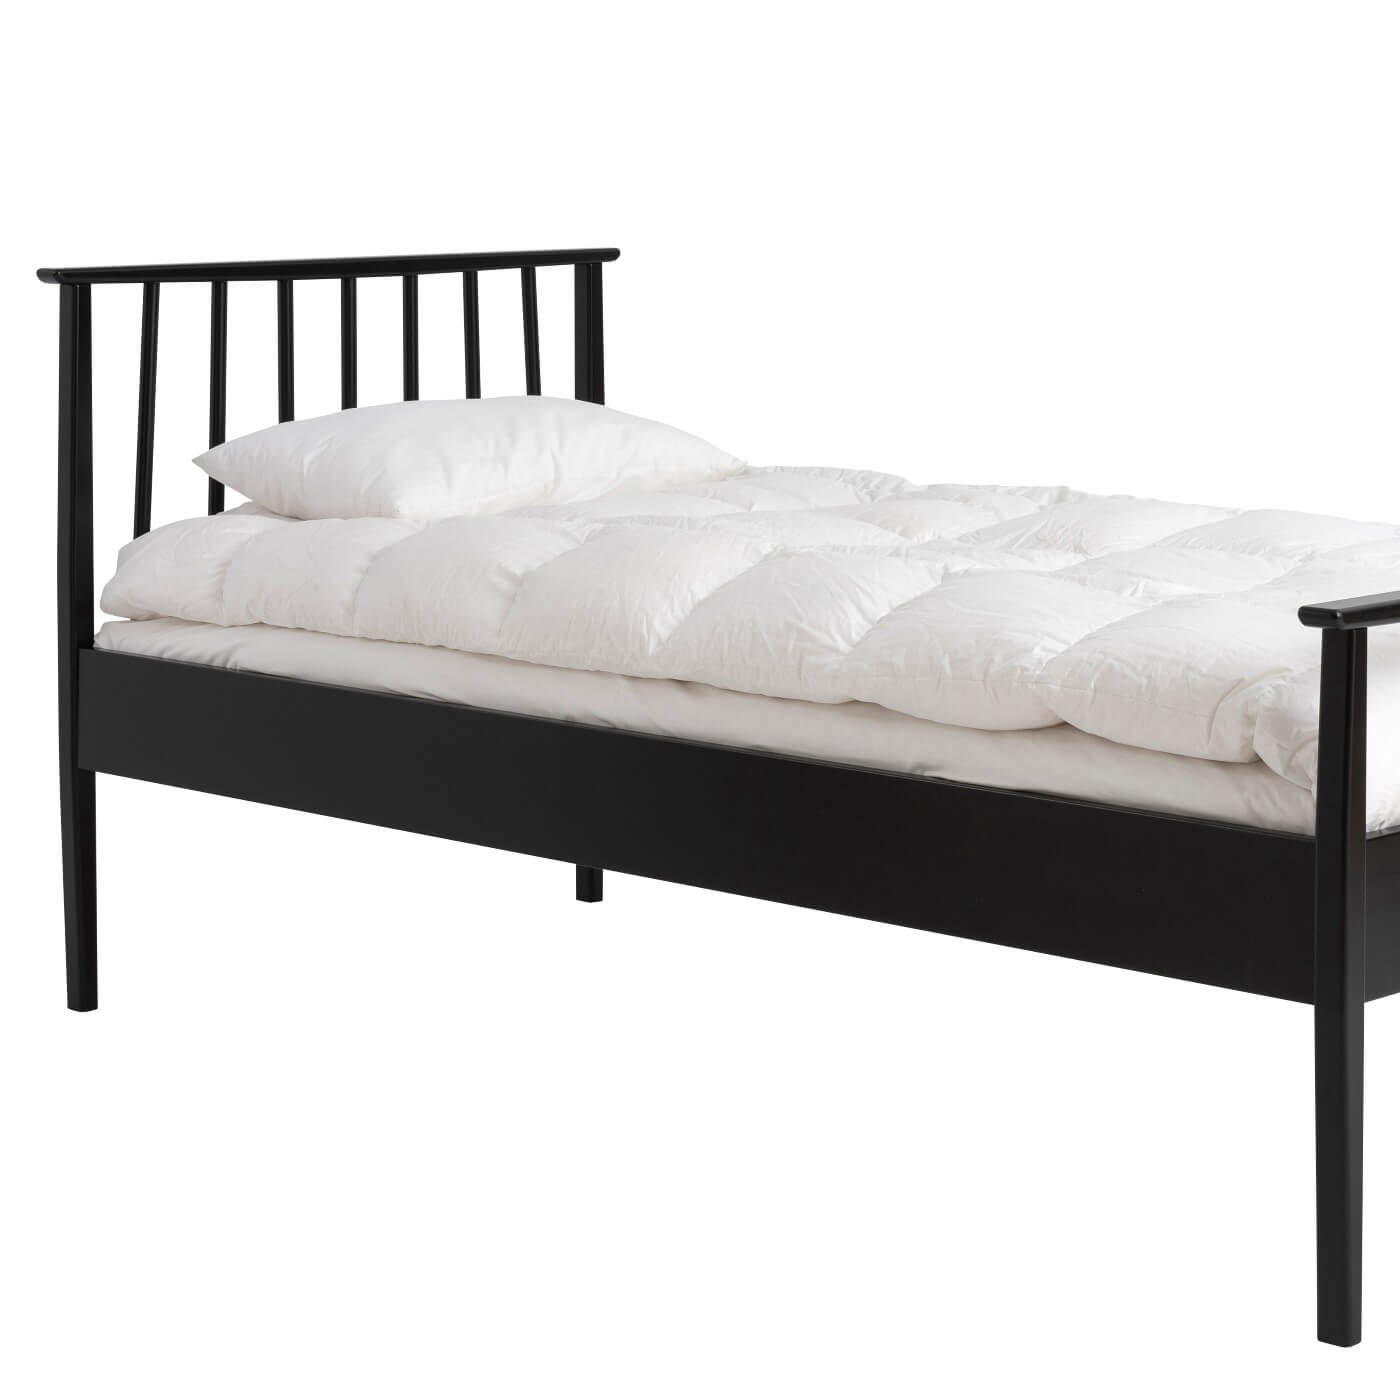 Łóżko drewniane czarne 90x200 NOEL jednoosobowe. Fragment łóżka z drewnianym czarnym wysokim ażurowym zagłówkiem i białą kołdrą i poduszką. Nowoczesny skandynawski design